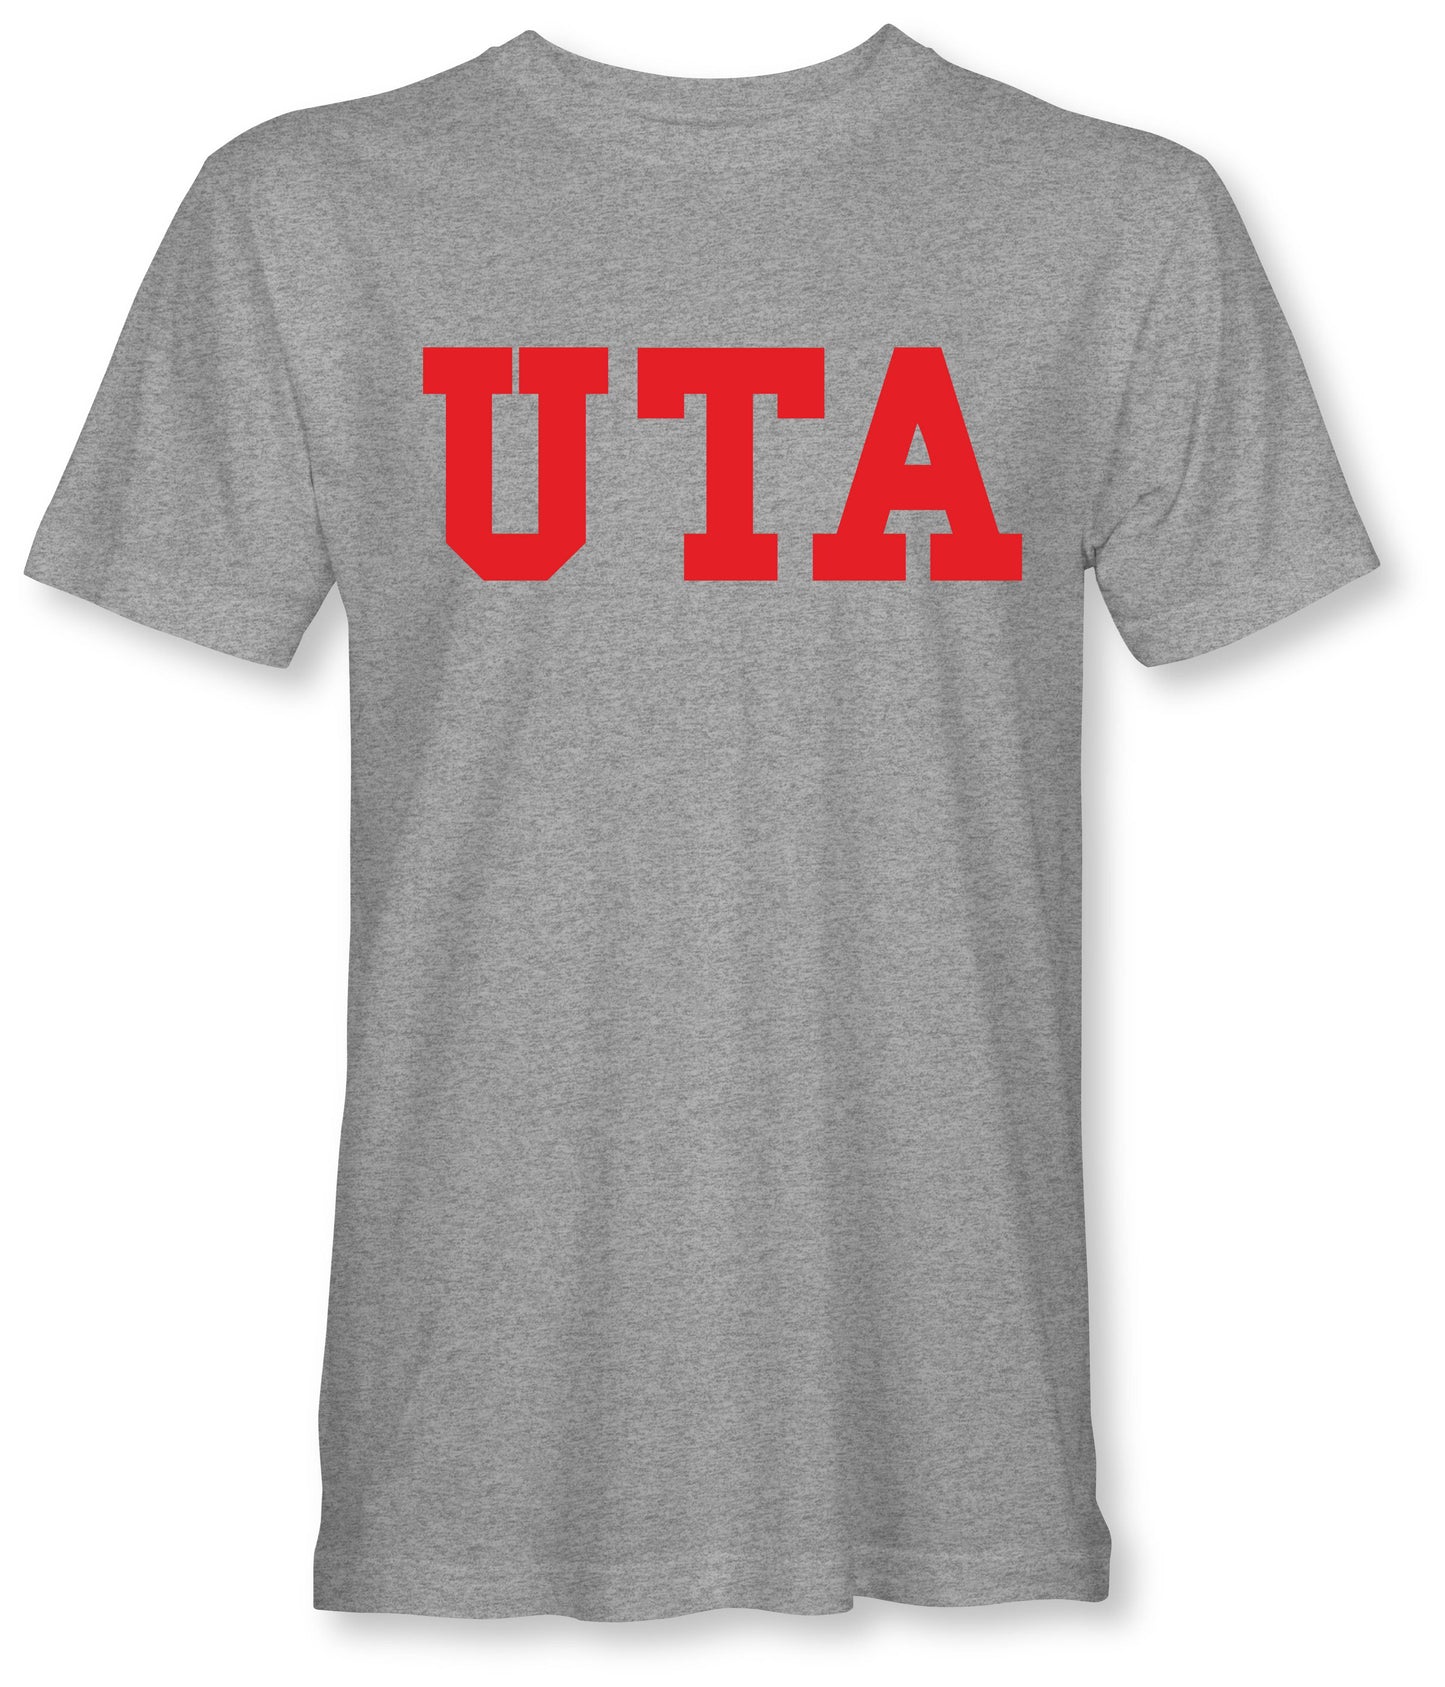 UTA - T-Shirt (Black Navy Red grey Pink)